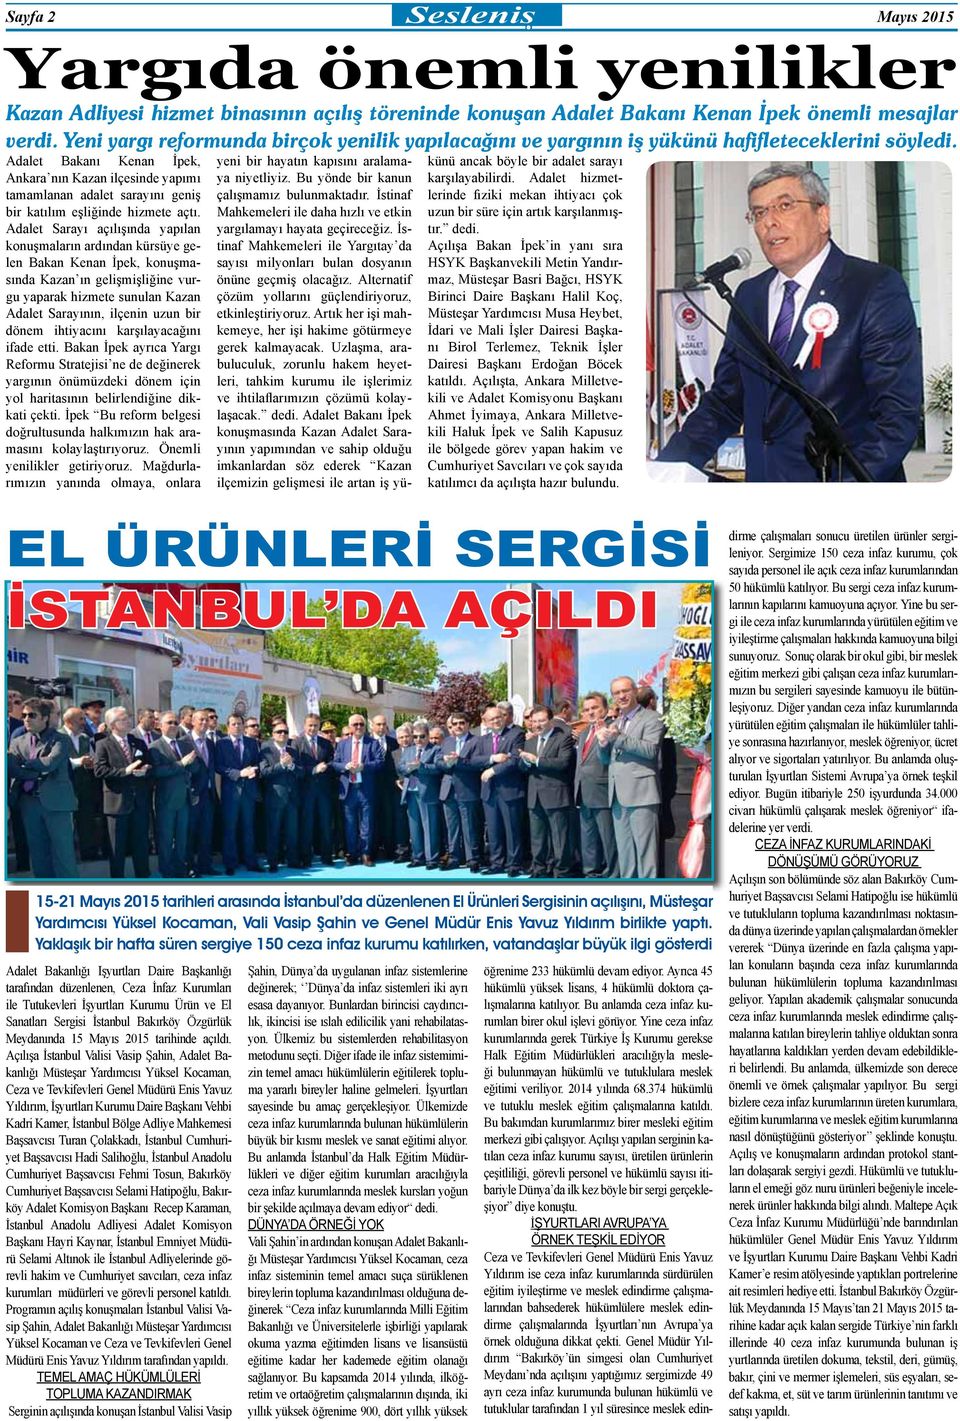 Adalet Bakanı Kenan İpek, Ankara nın Kazan ilçesinde yapımı tamamlanan adalet sarayını geniş bir katılım eşliğinde hizmete açtı.